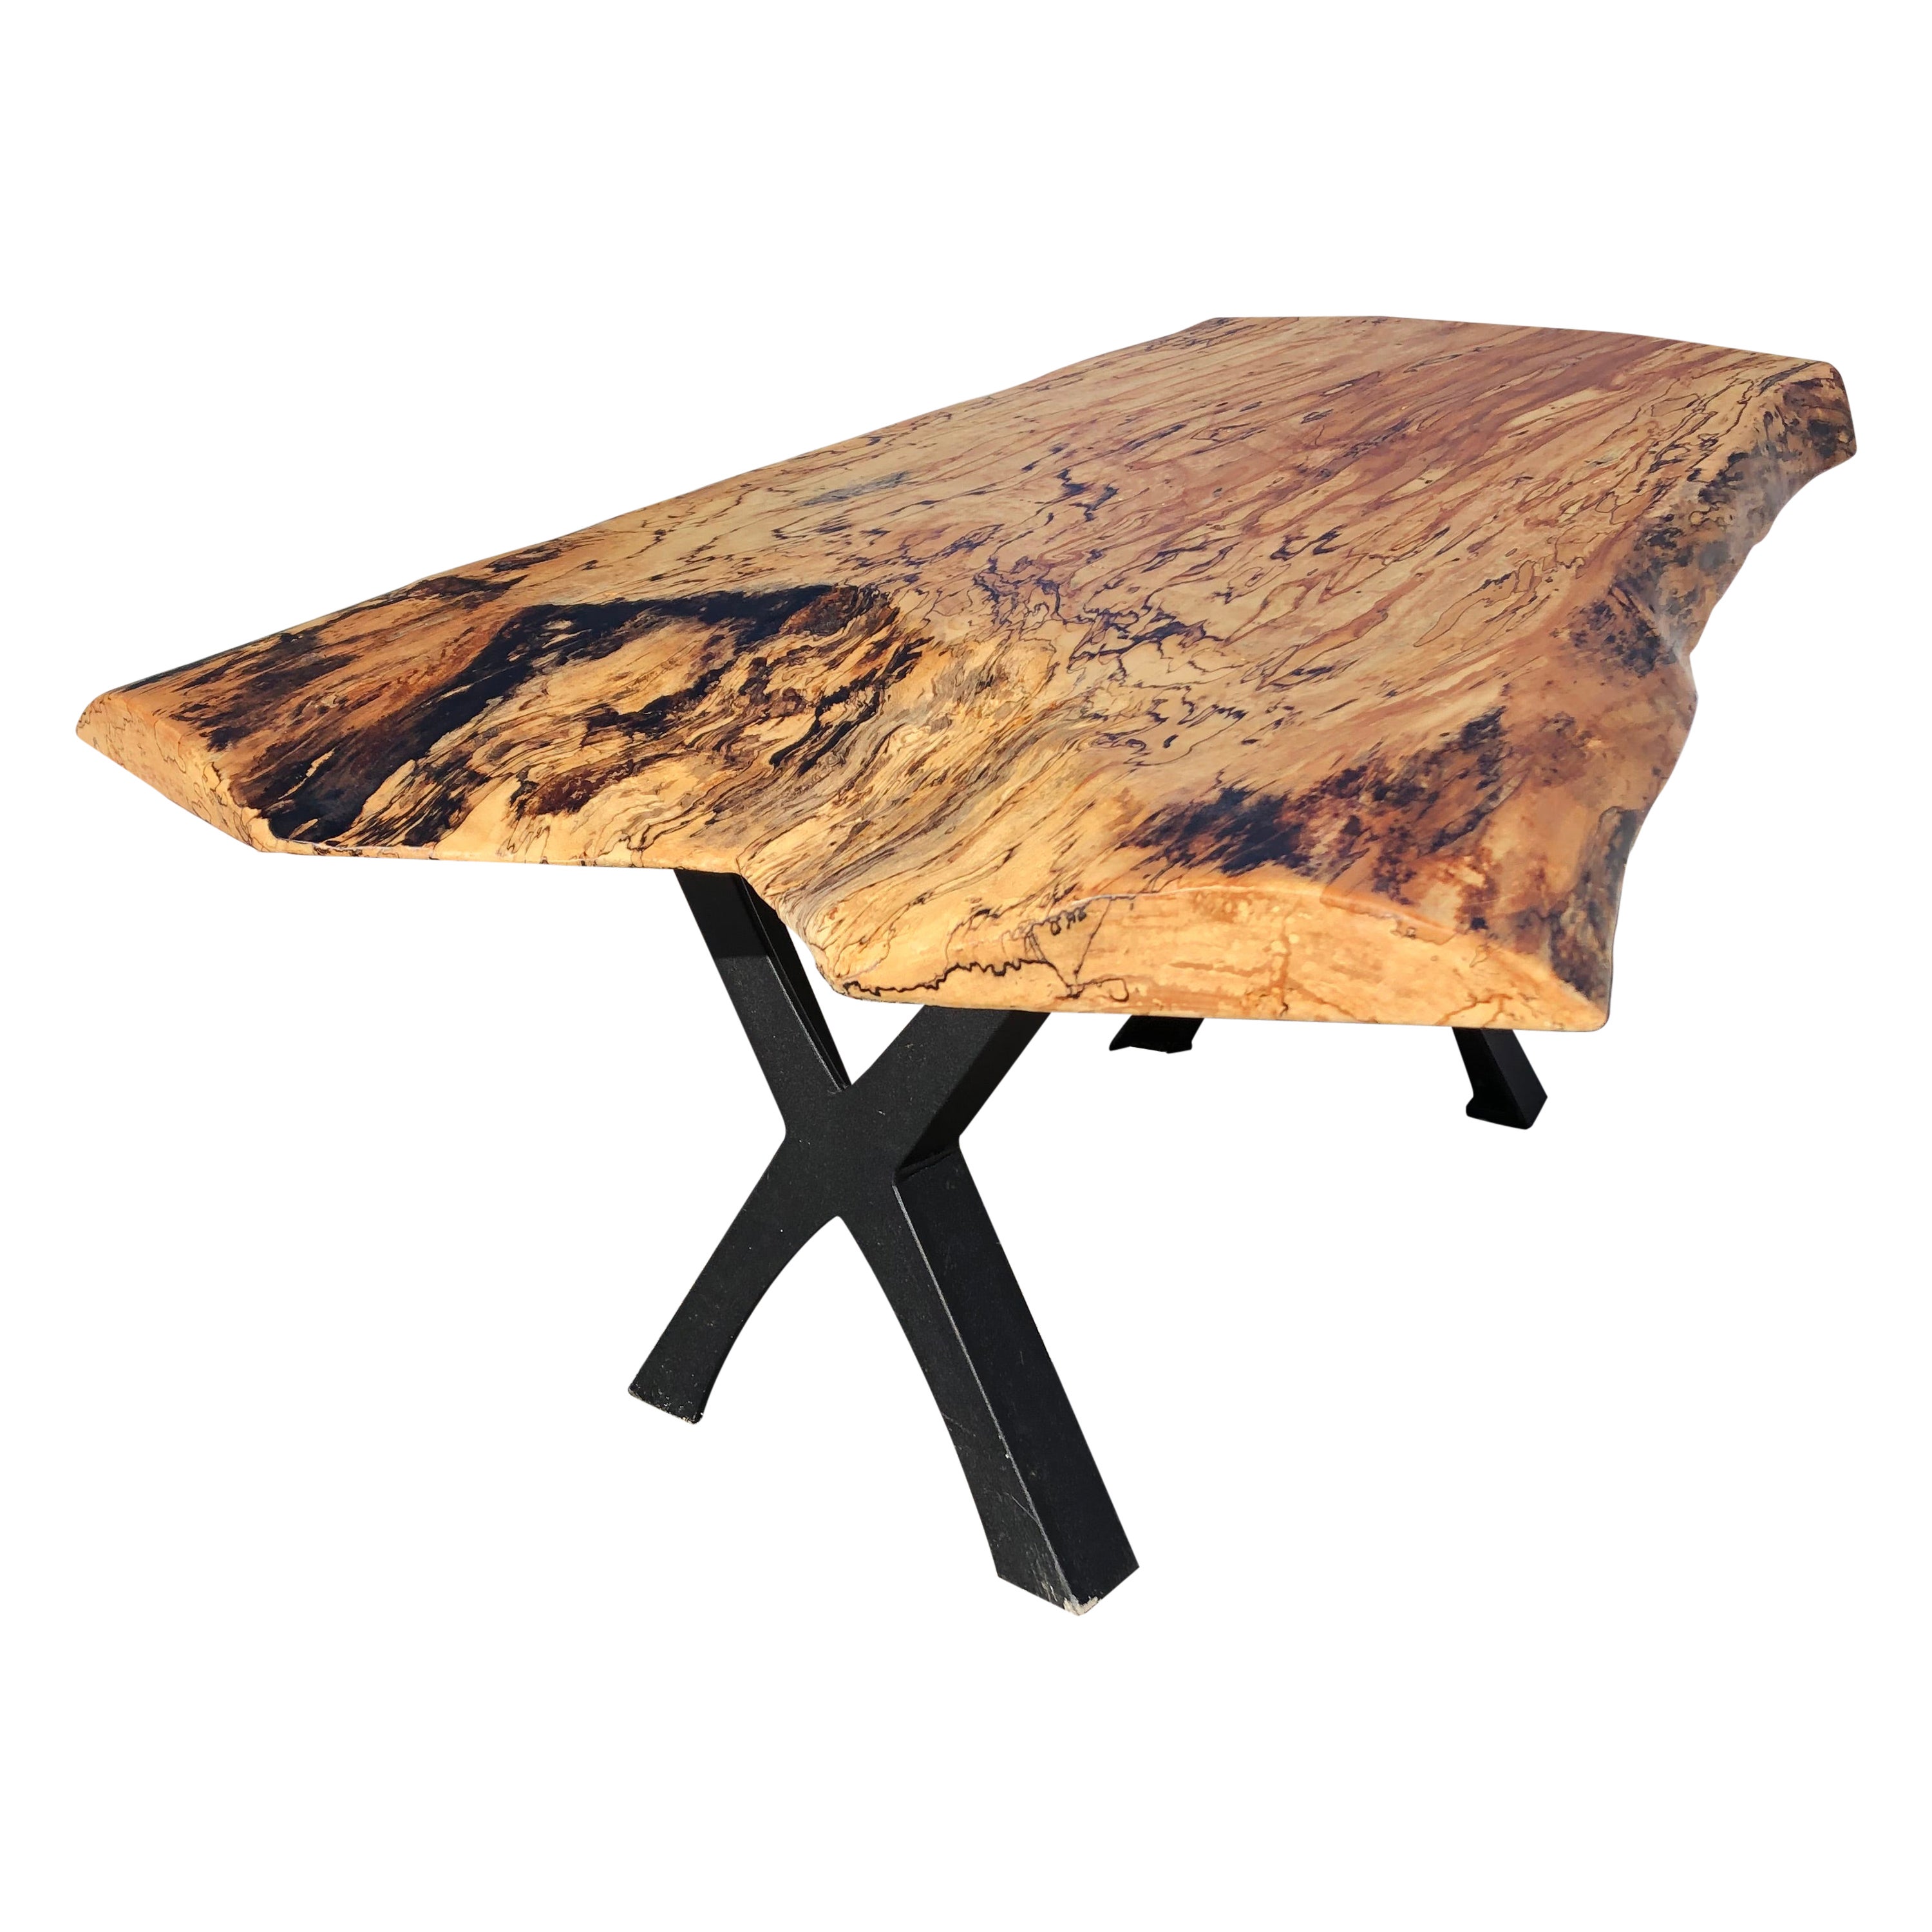 Magnifique table basse moderne et organique en érable à bords naturels, fabriquée à la main